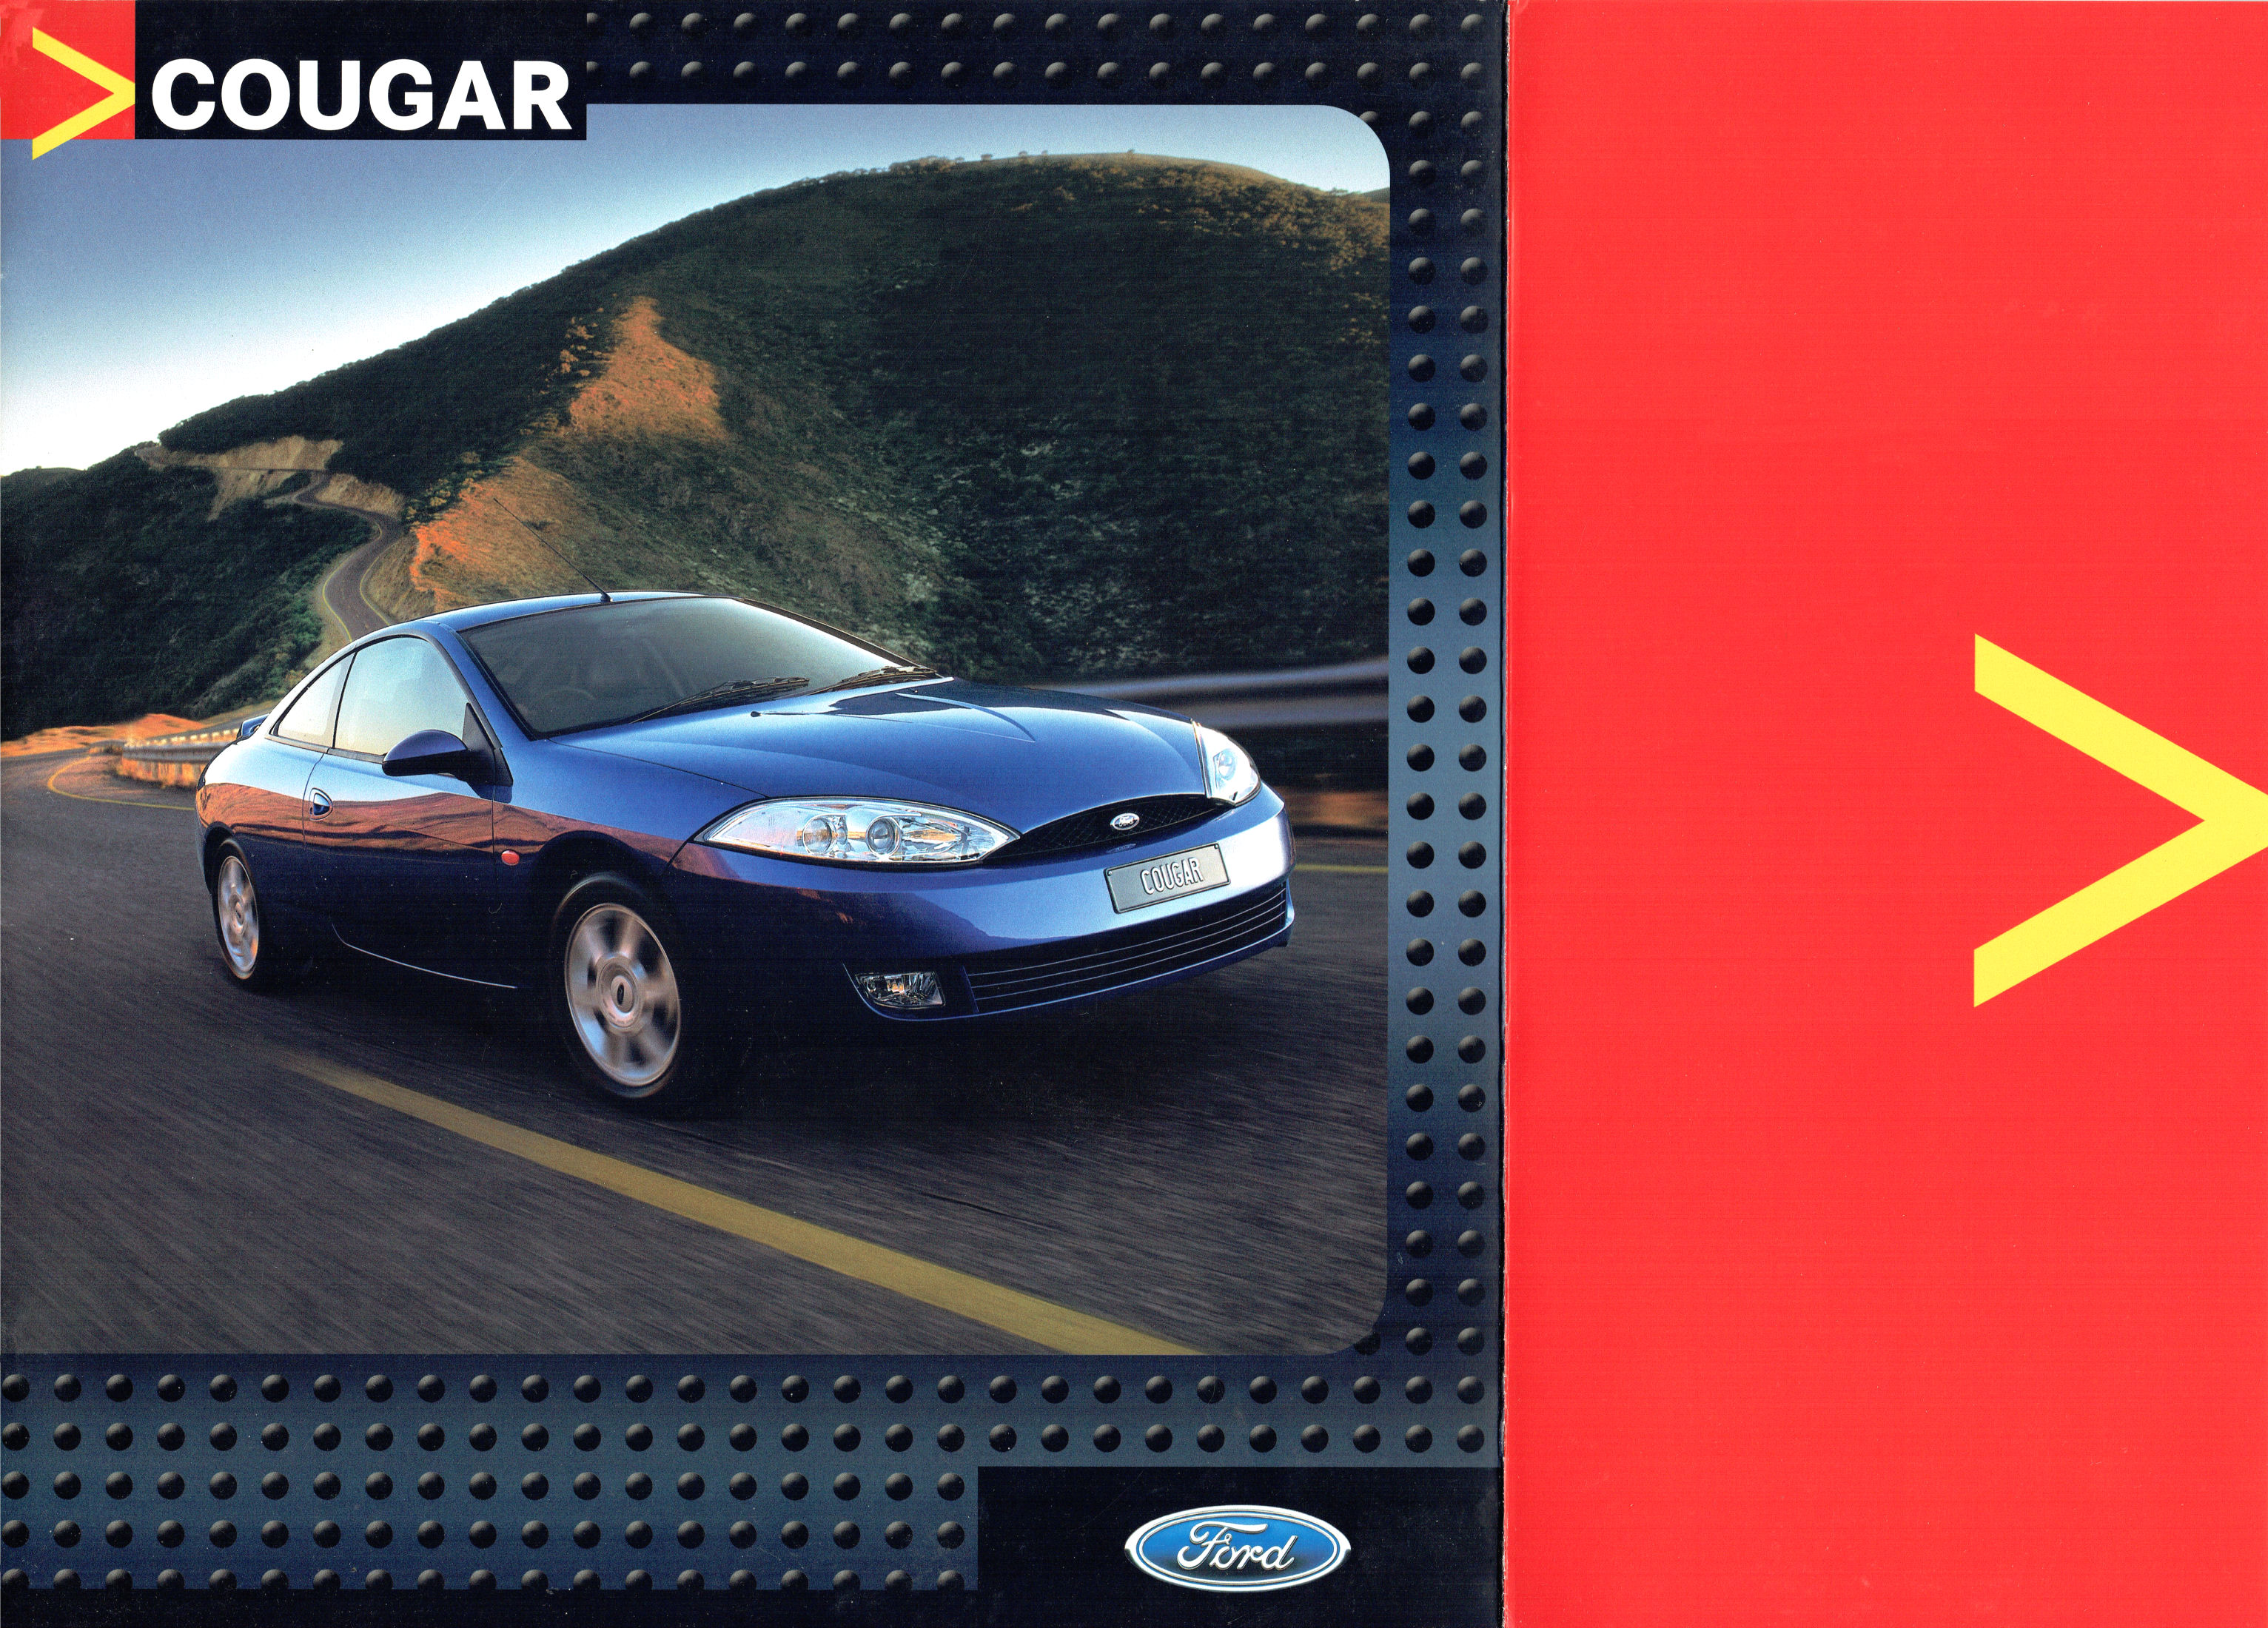 2001 Ford Cougar (Aus)-01a